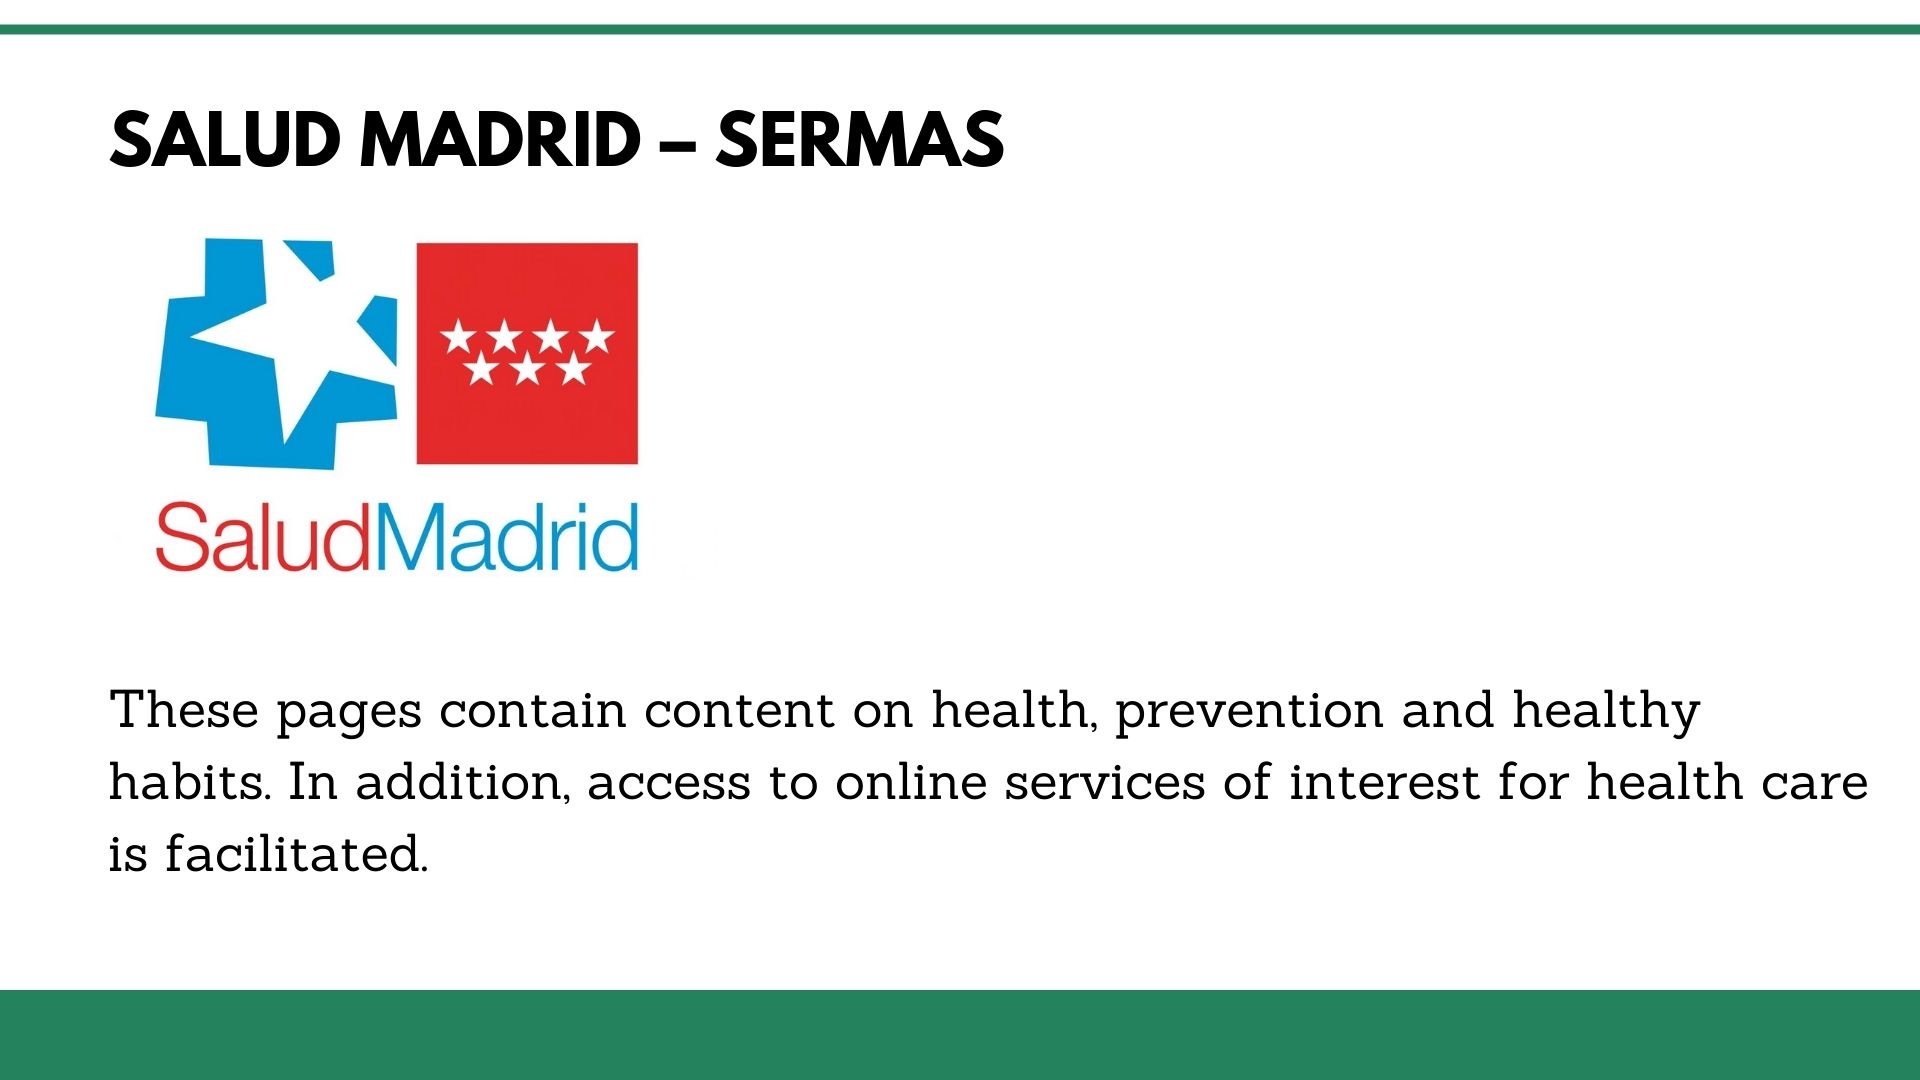 Sanidad Madrid – SERMAS